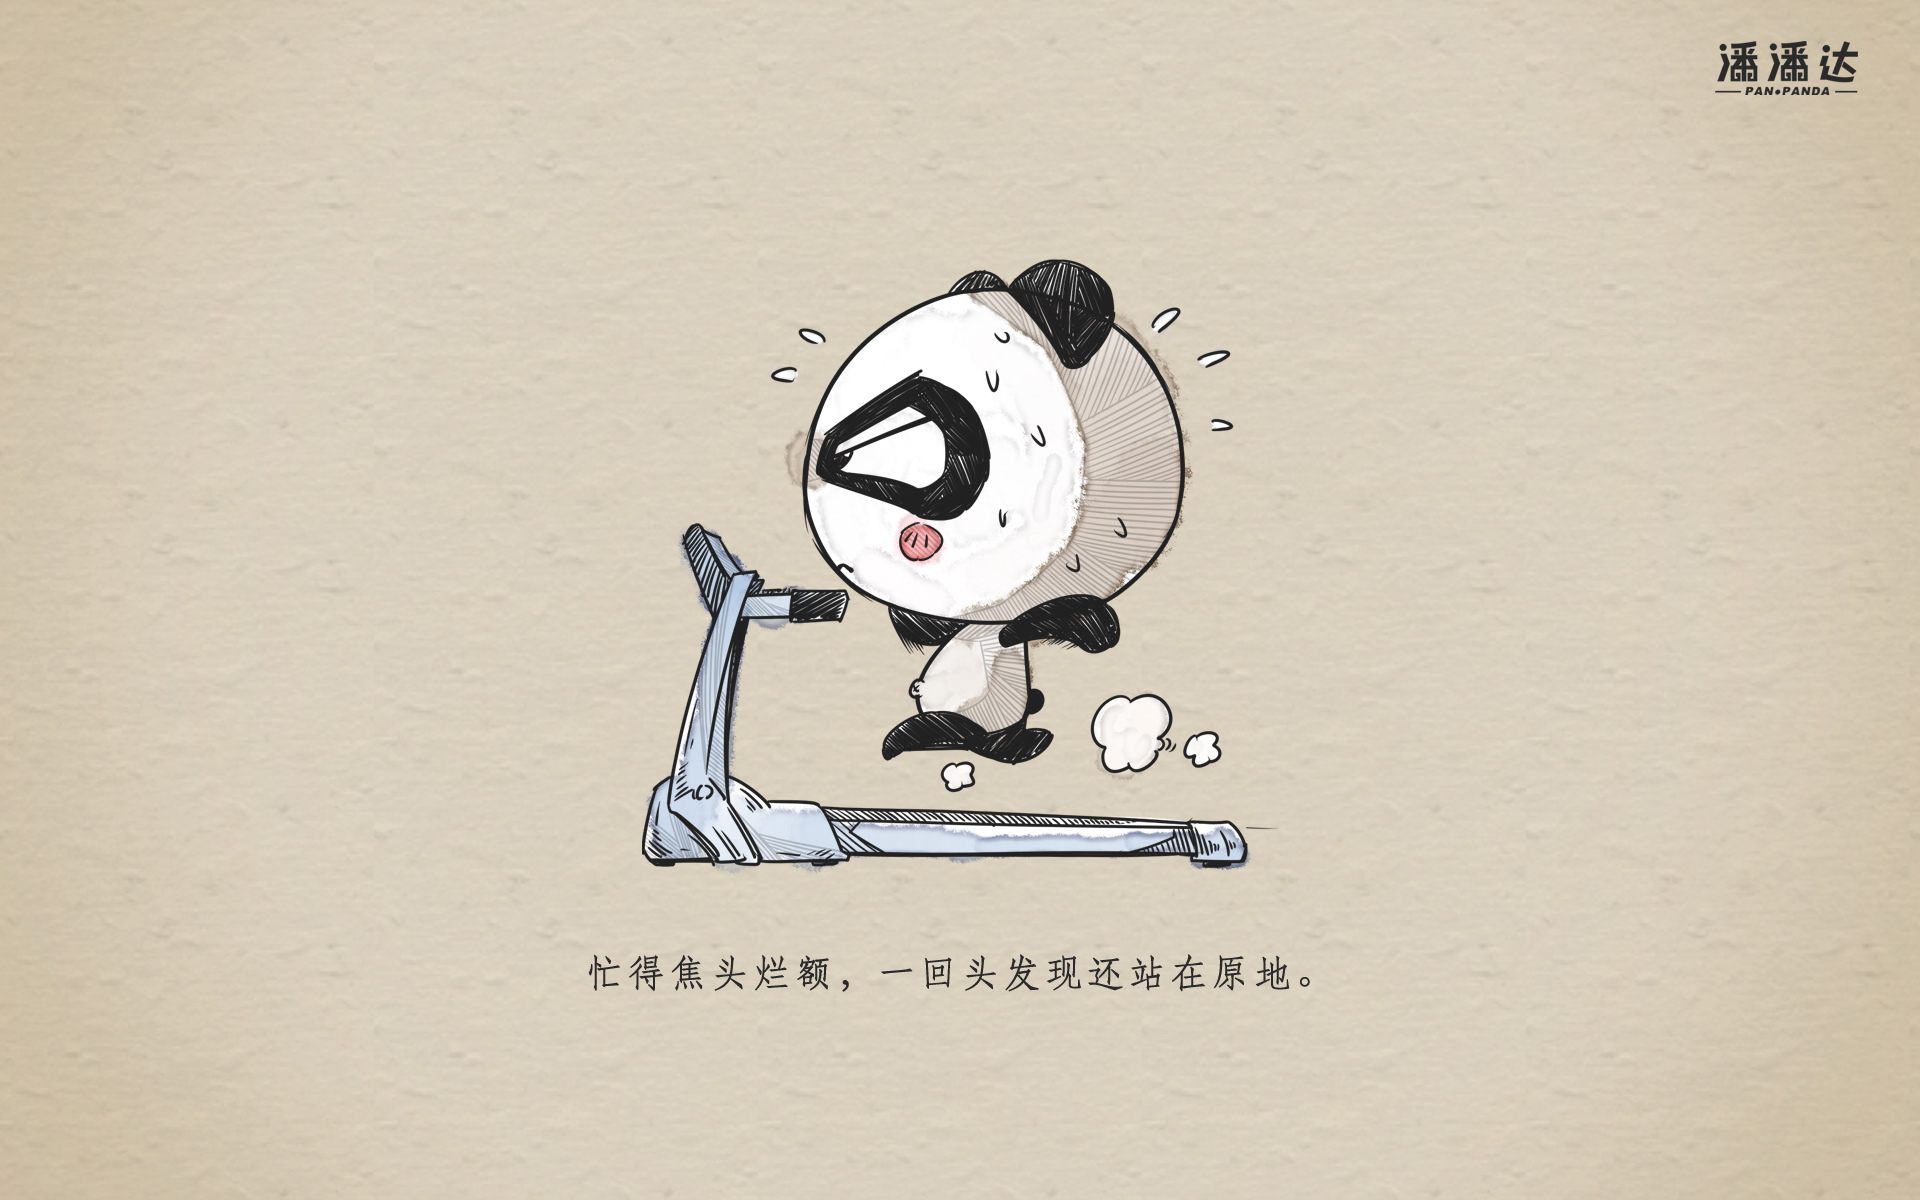 潘潘达 可爱卡通熊猫宽屏壁纸(壁纸4)